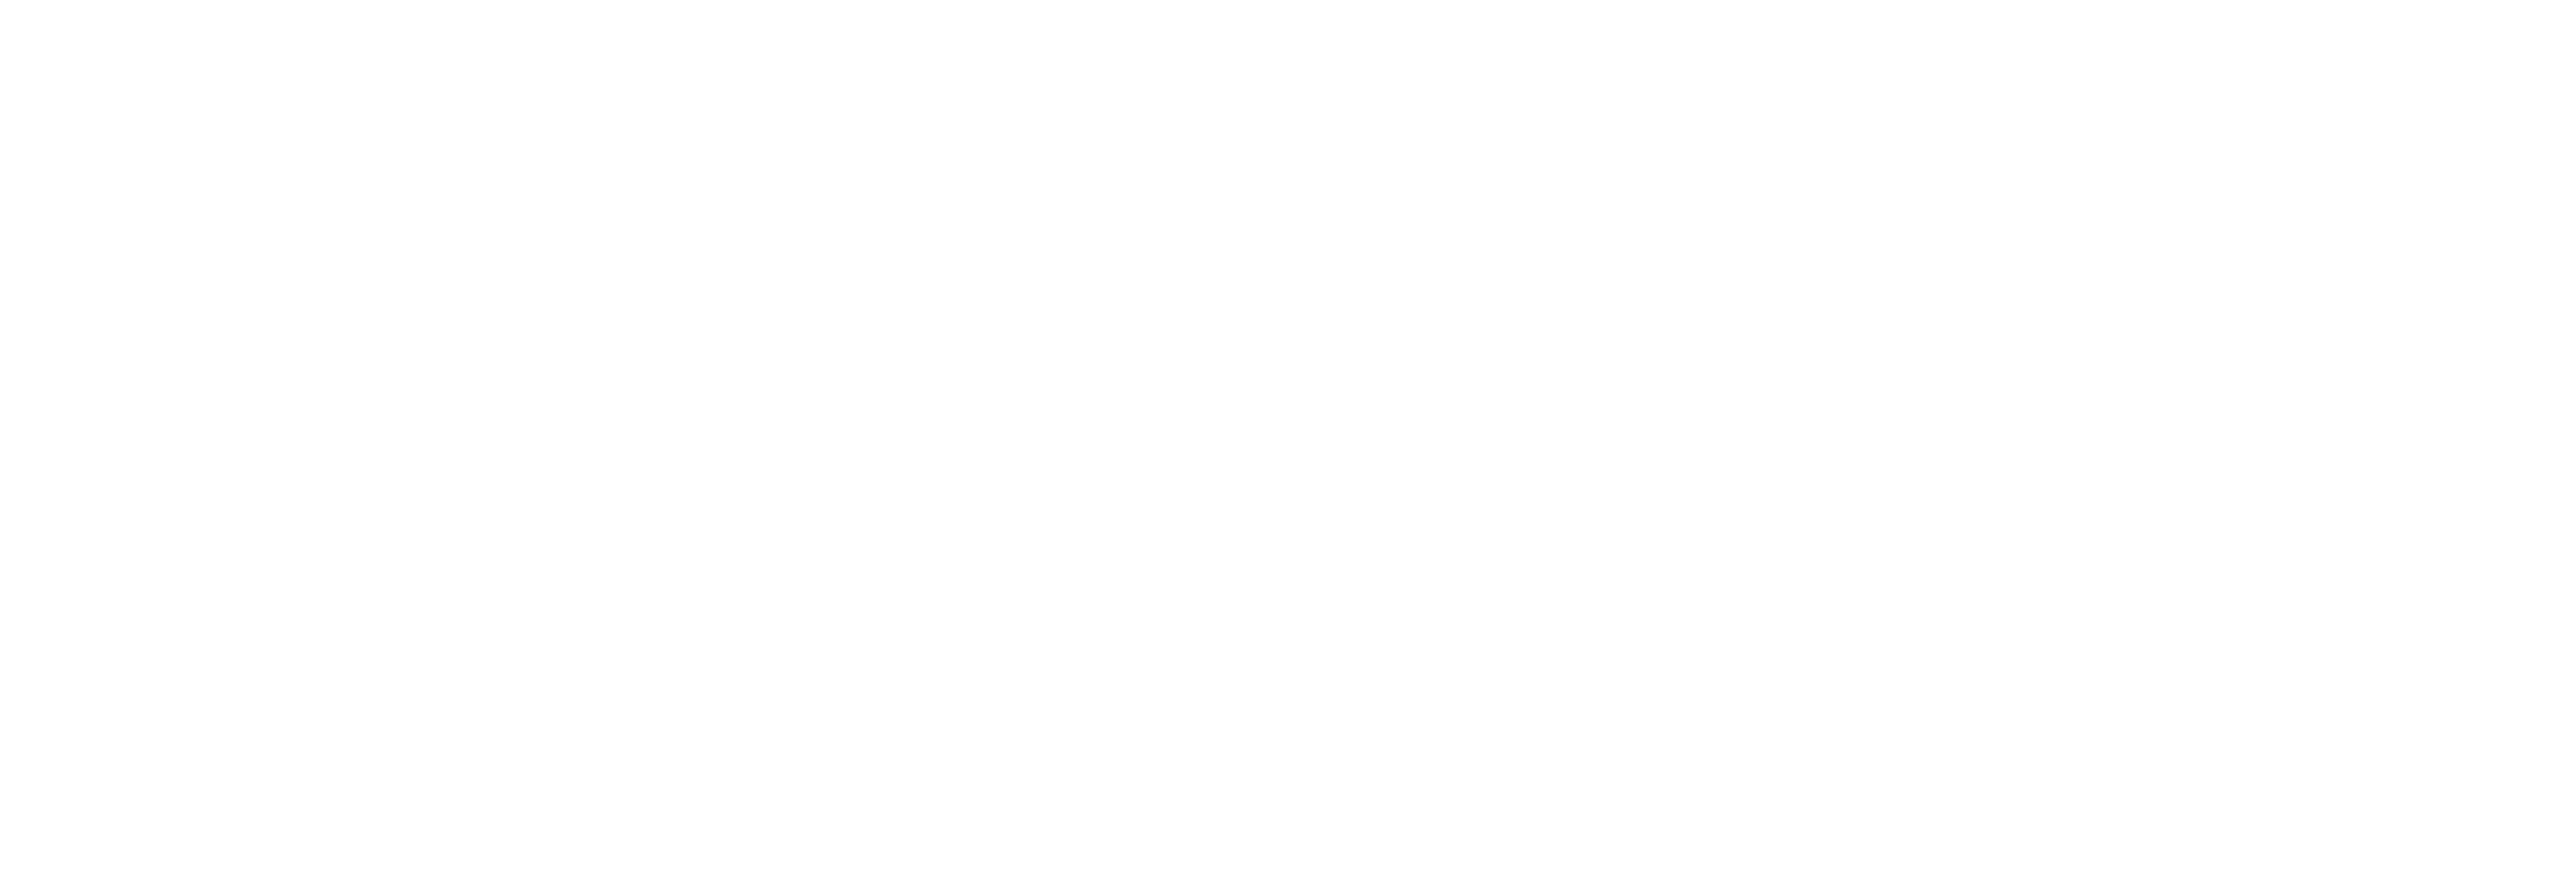 AniCura Cabinet Vétérinaire Anthemis à Grimbergen logo